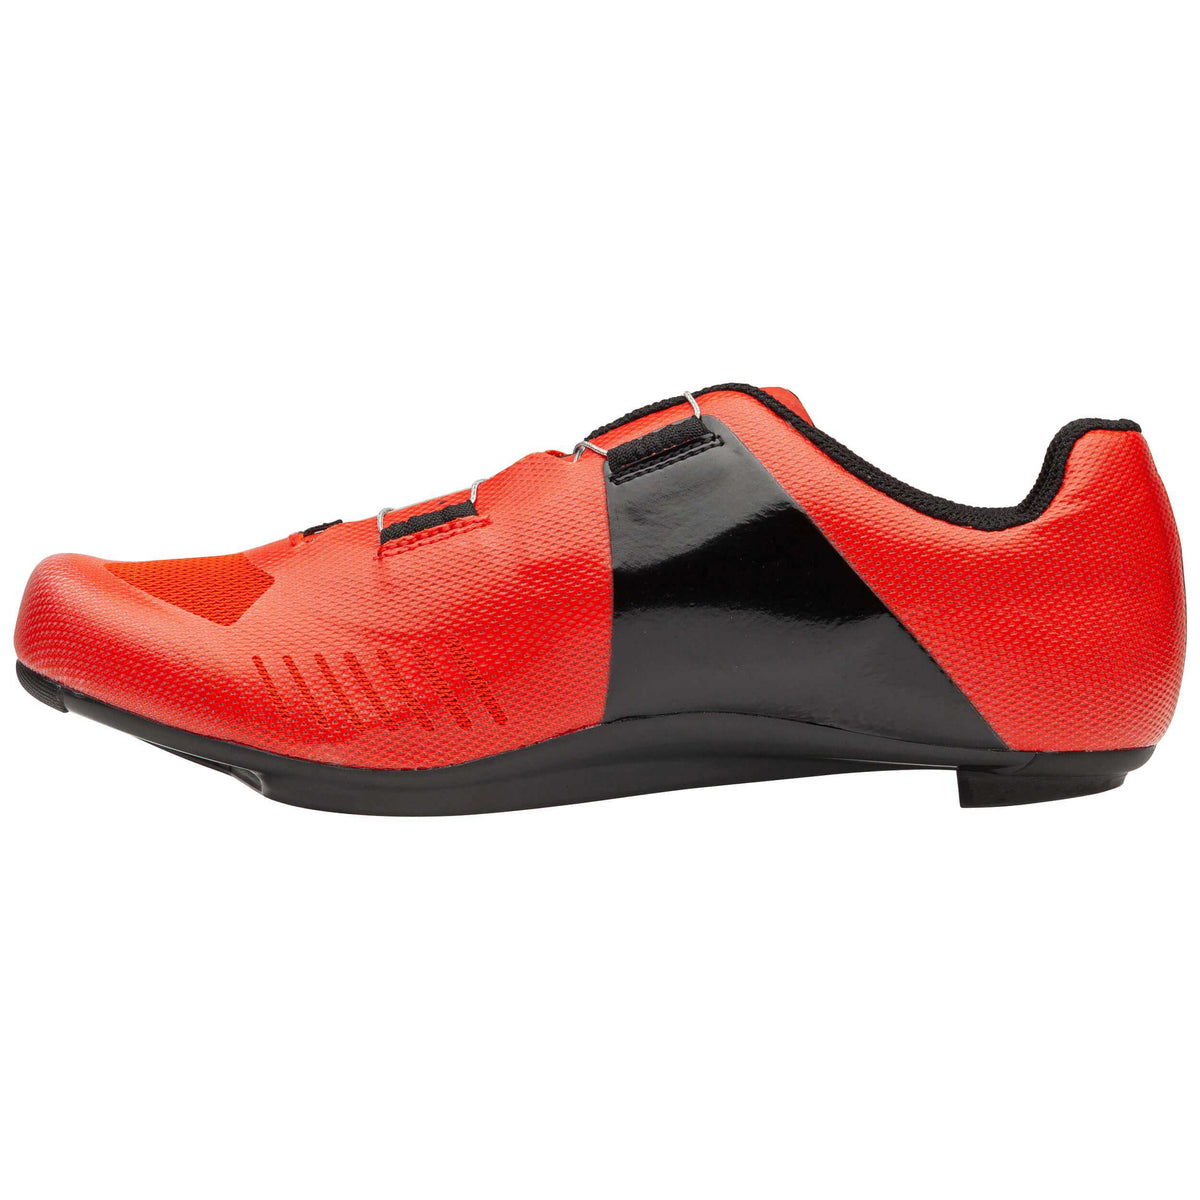 Garneau Men's Tri Air Lite Shoe